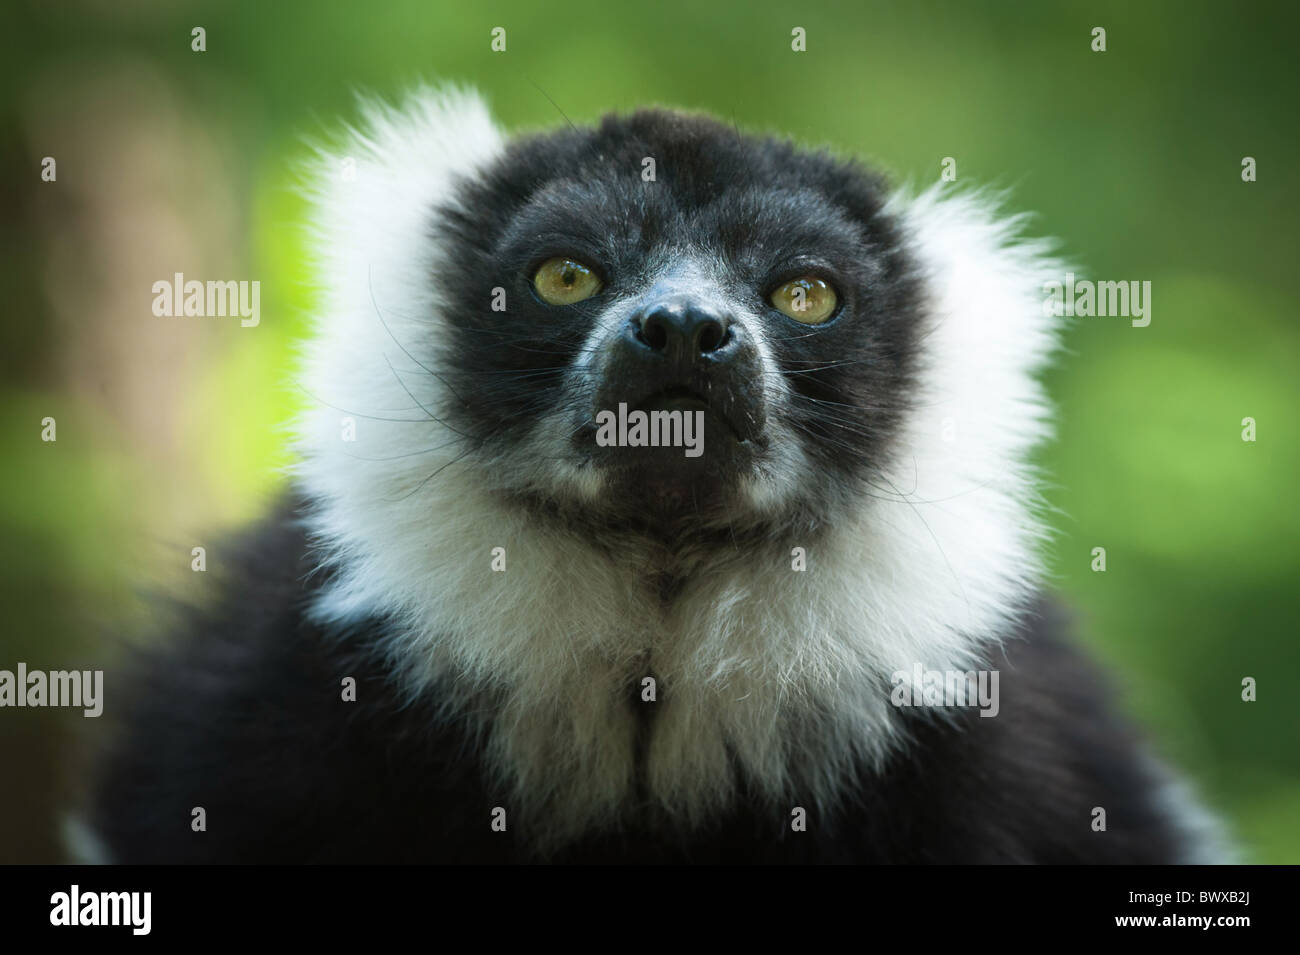 Close-up of a Black and White Gélinotte Lemur Banque D'Images